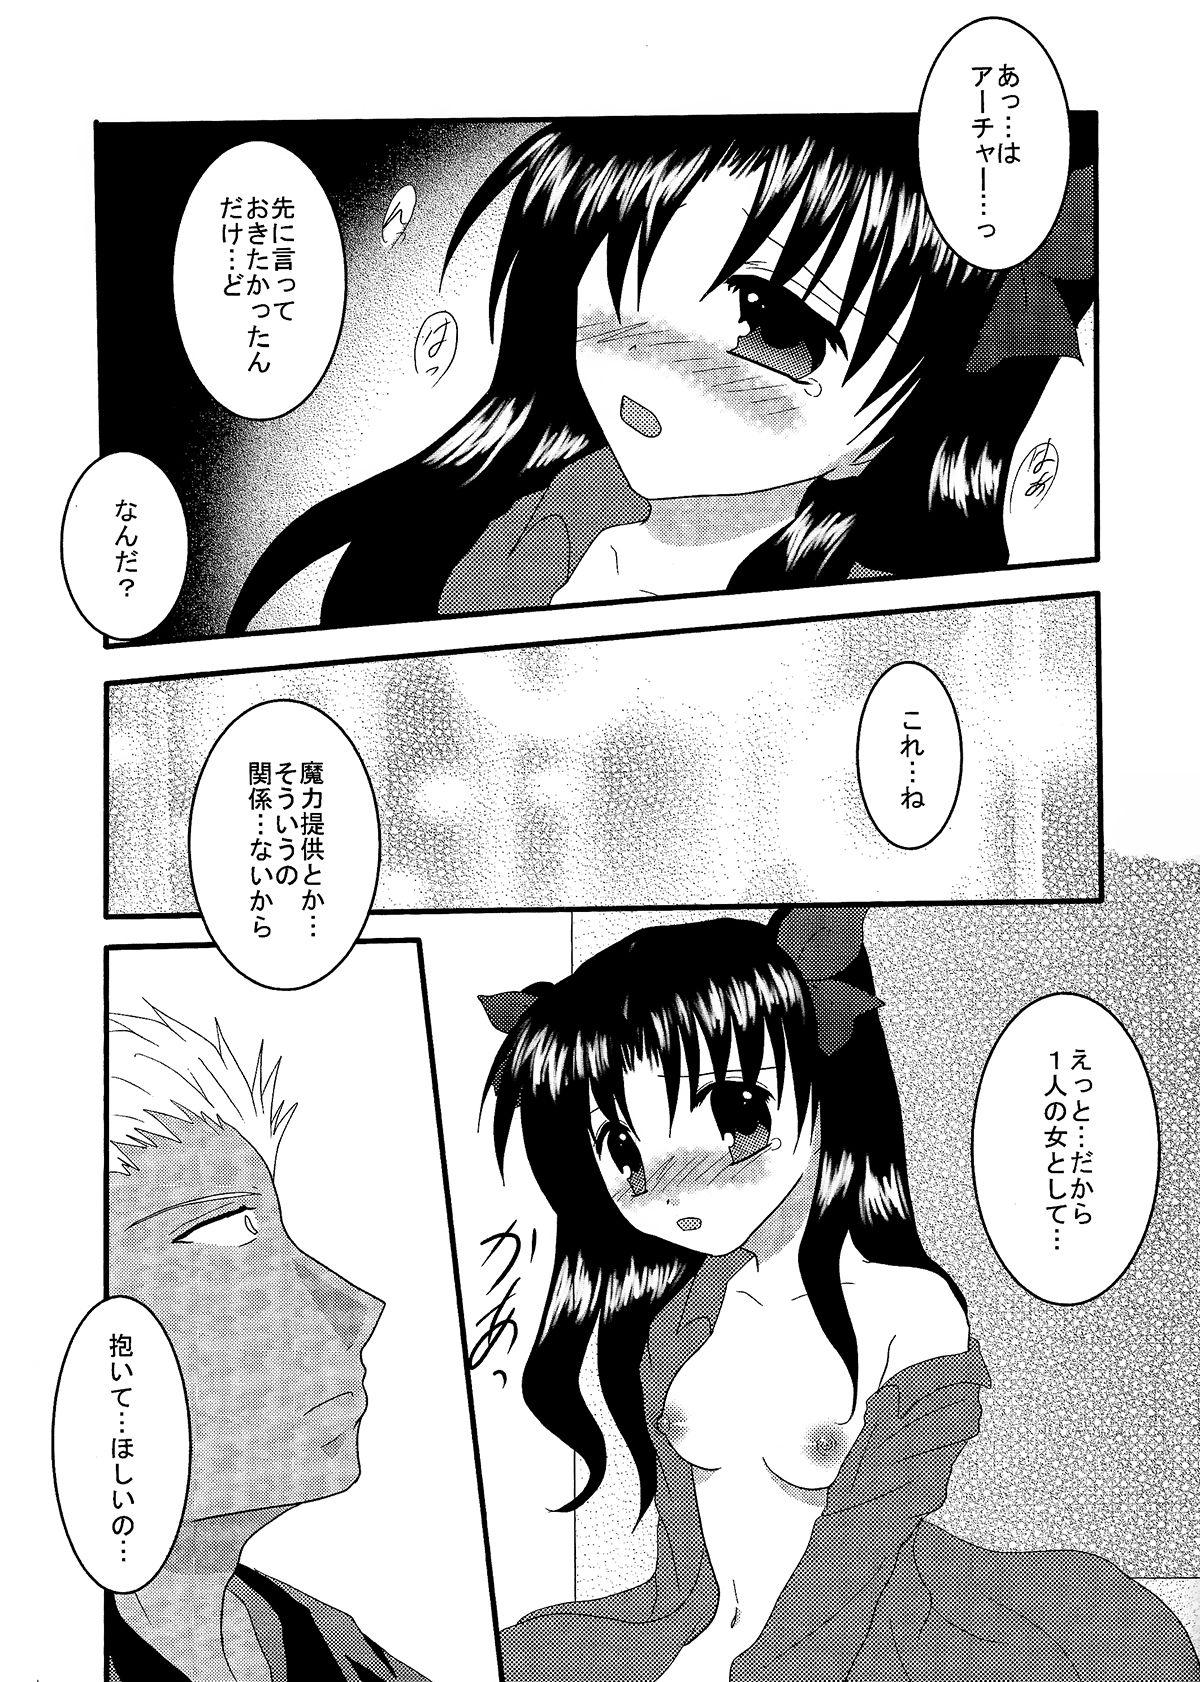 Blowjob Gensou Ichiya - Fate stay night Clit - Page 12